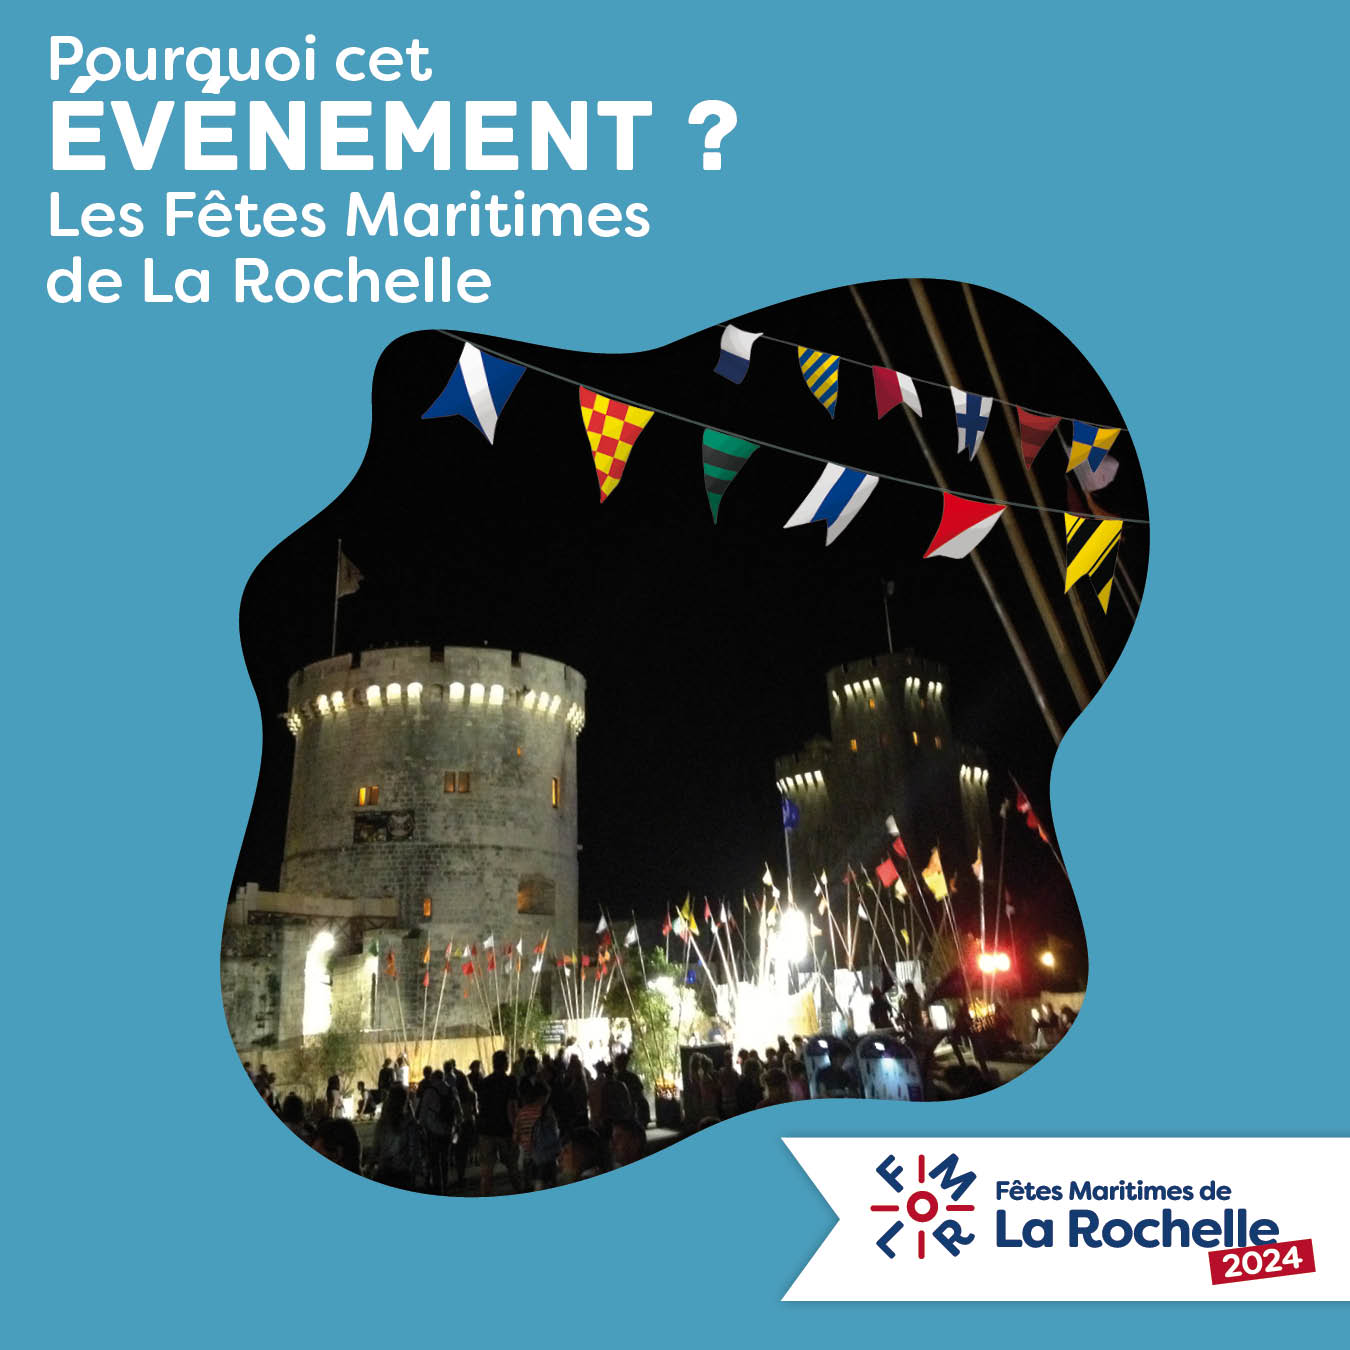 Pourquoi cet événement, les Fêtes Maritimes de La Rochelle